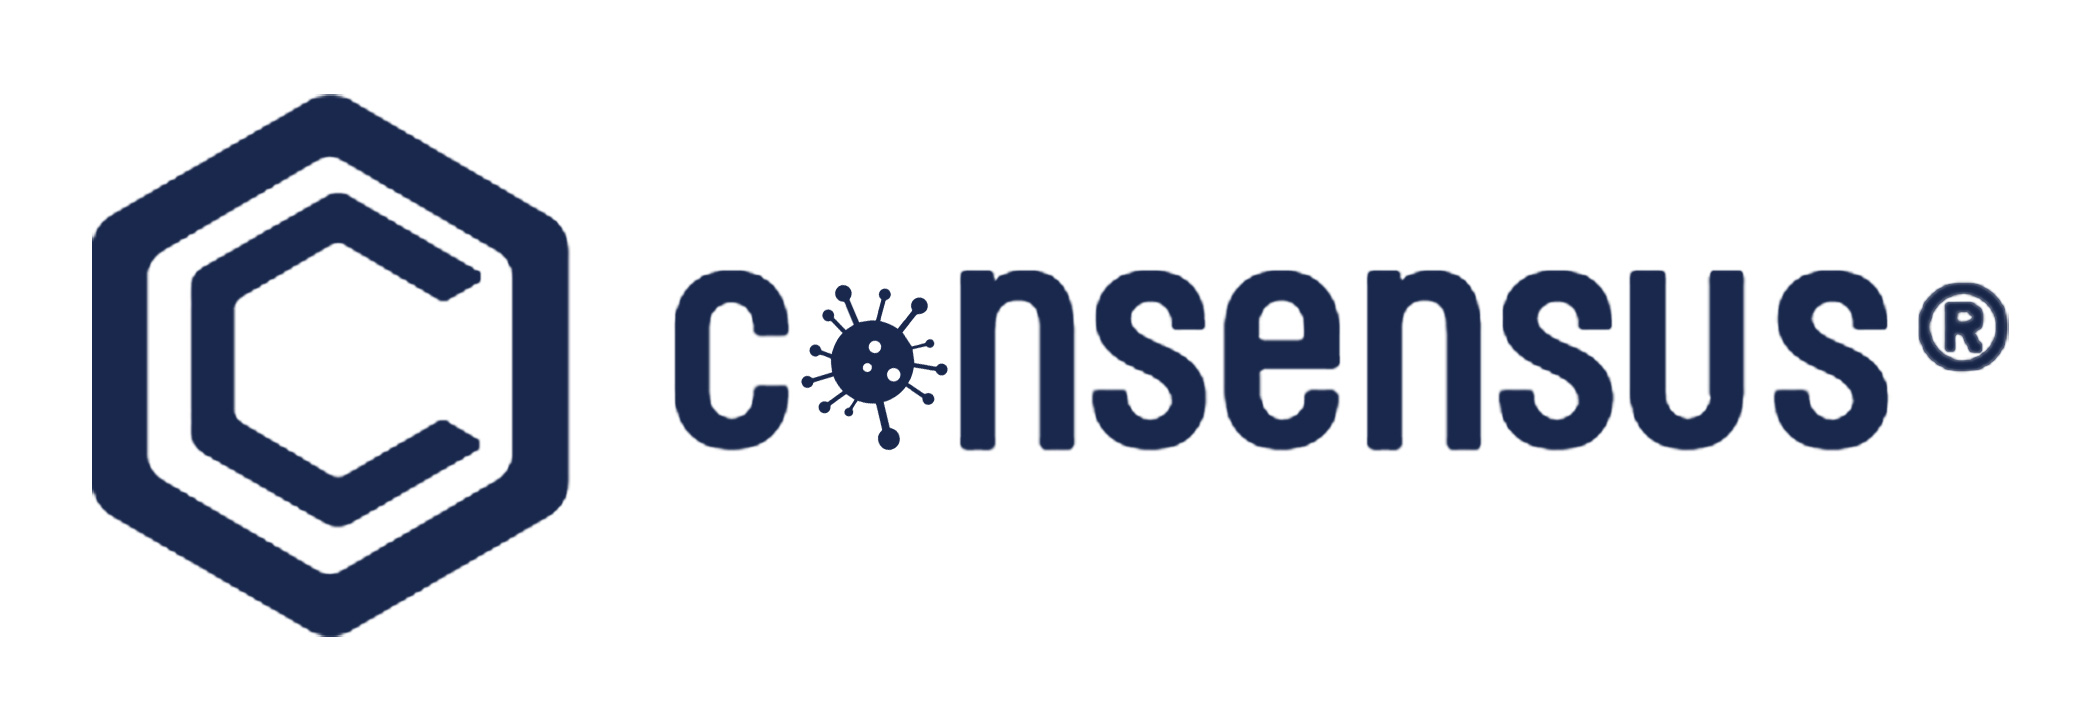 کنسرسوس ۲۰۲۰ Consensus